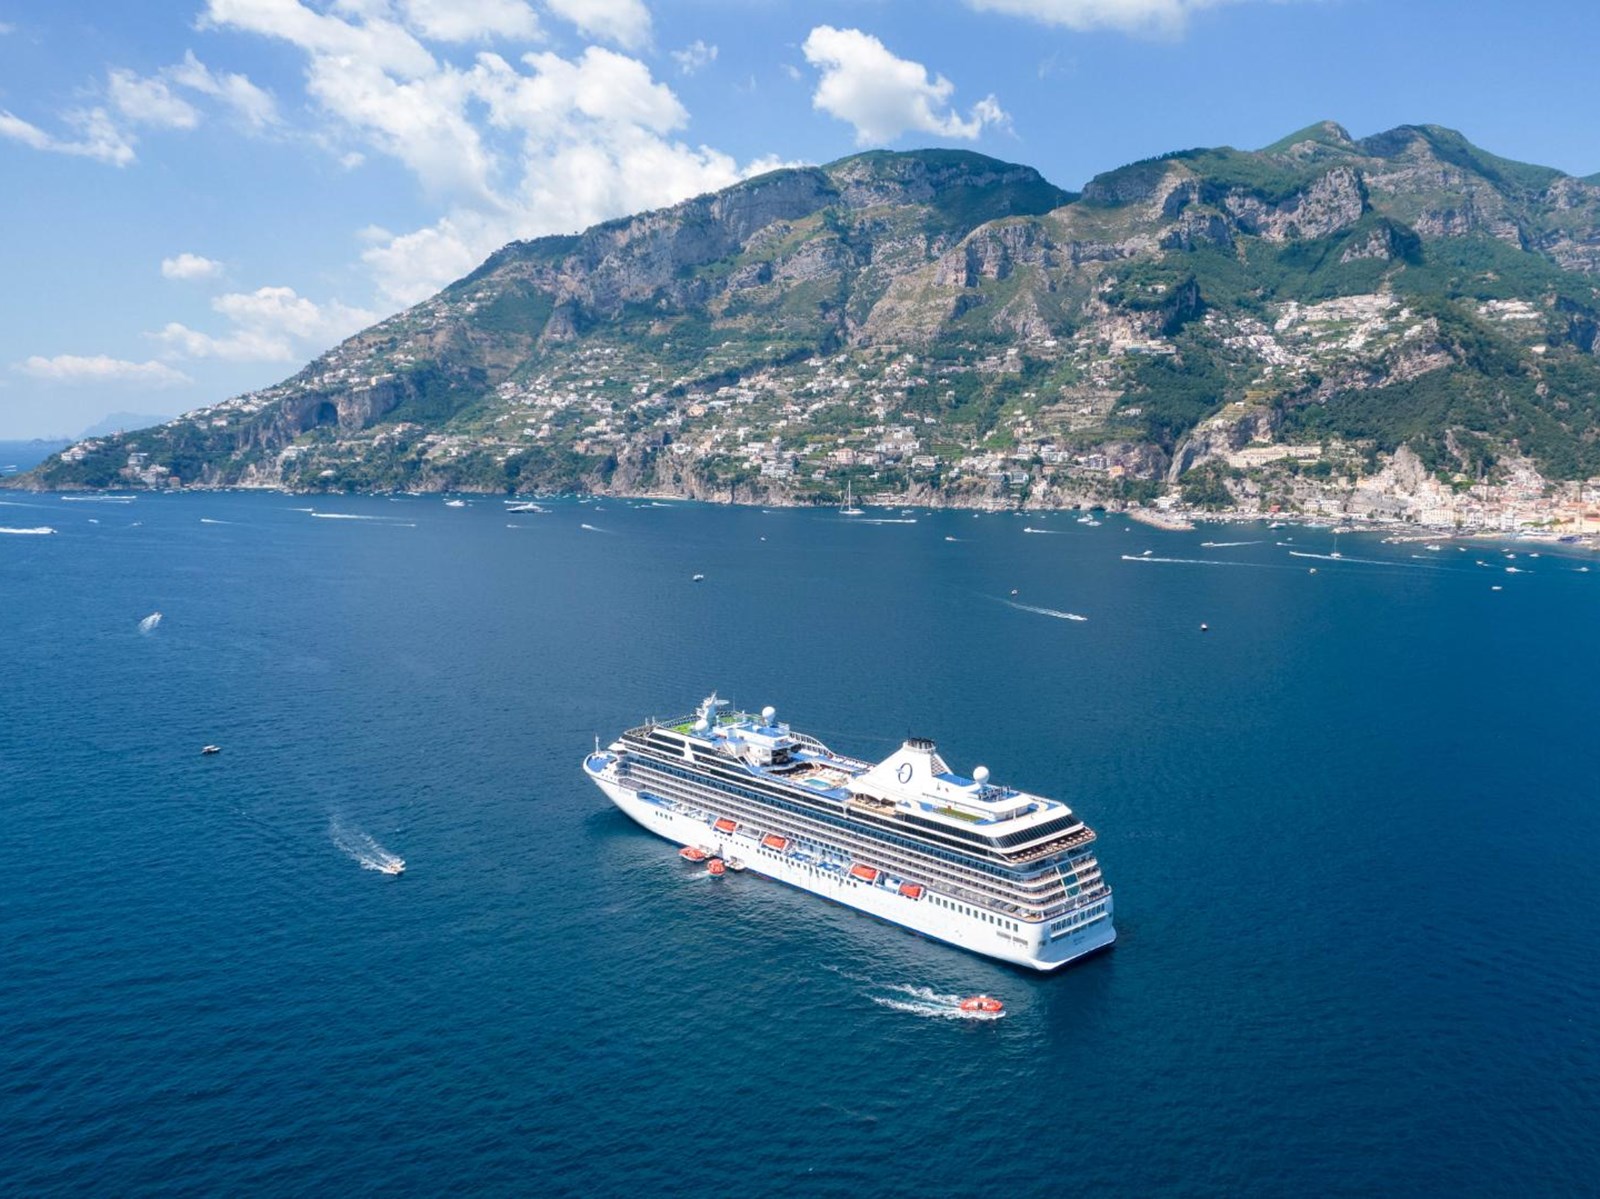 De Riviera voor anker voor de kust van Amalfi, Italië.